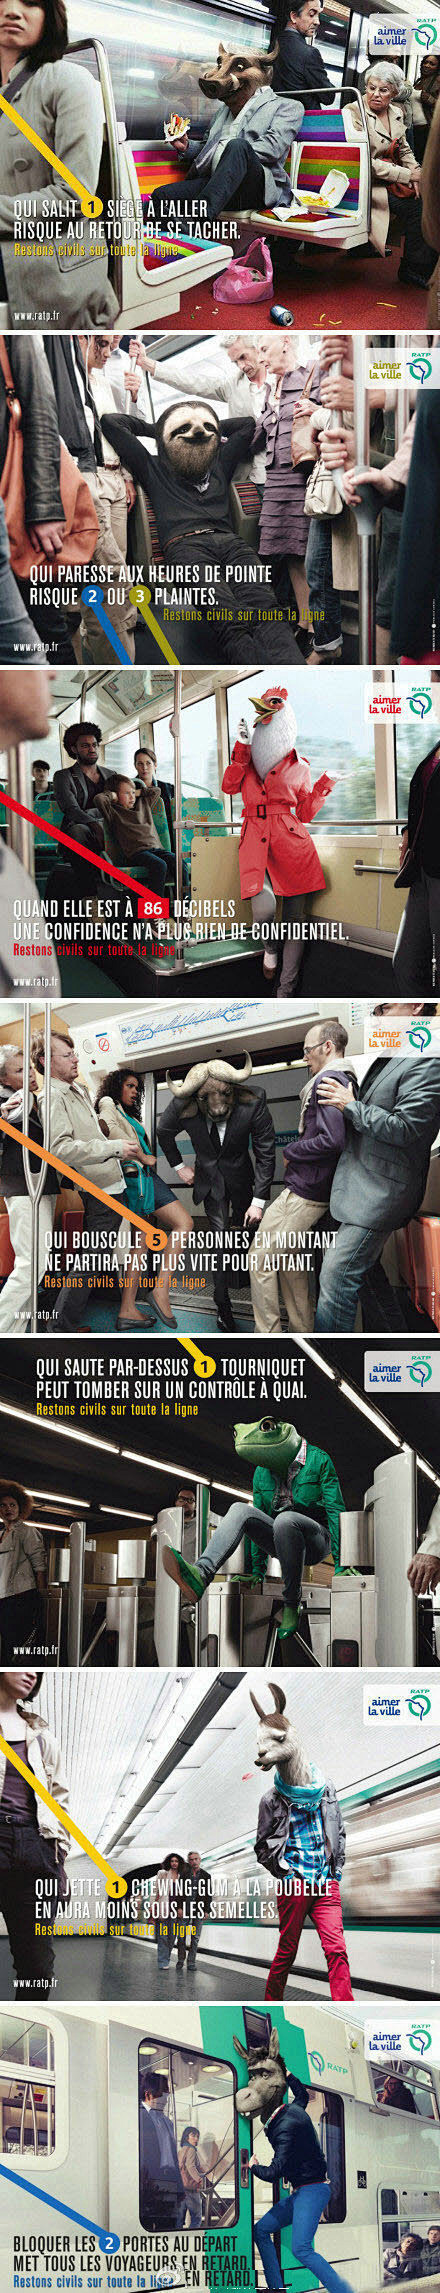 巴黎地铁的广告，它很明确的告诉我们，凡是...